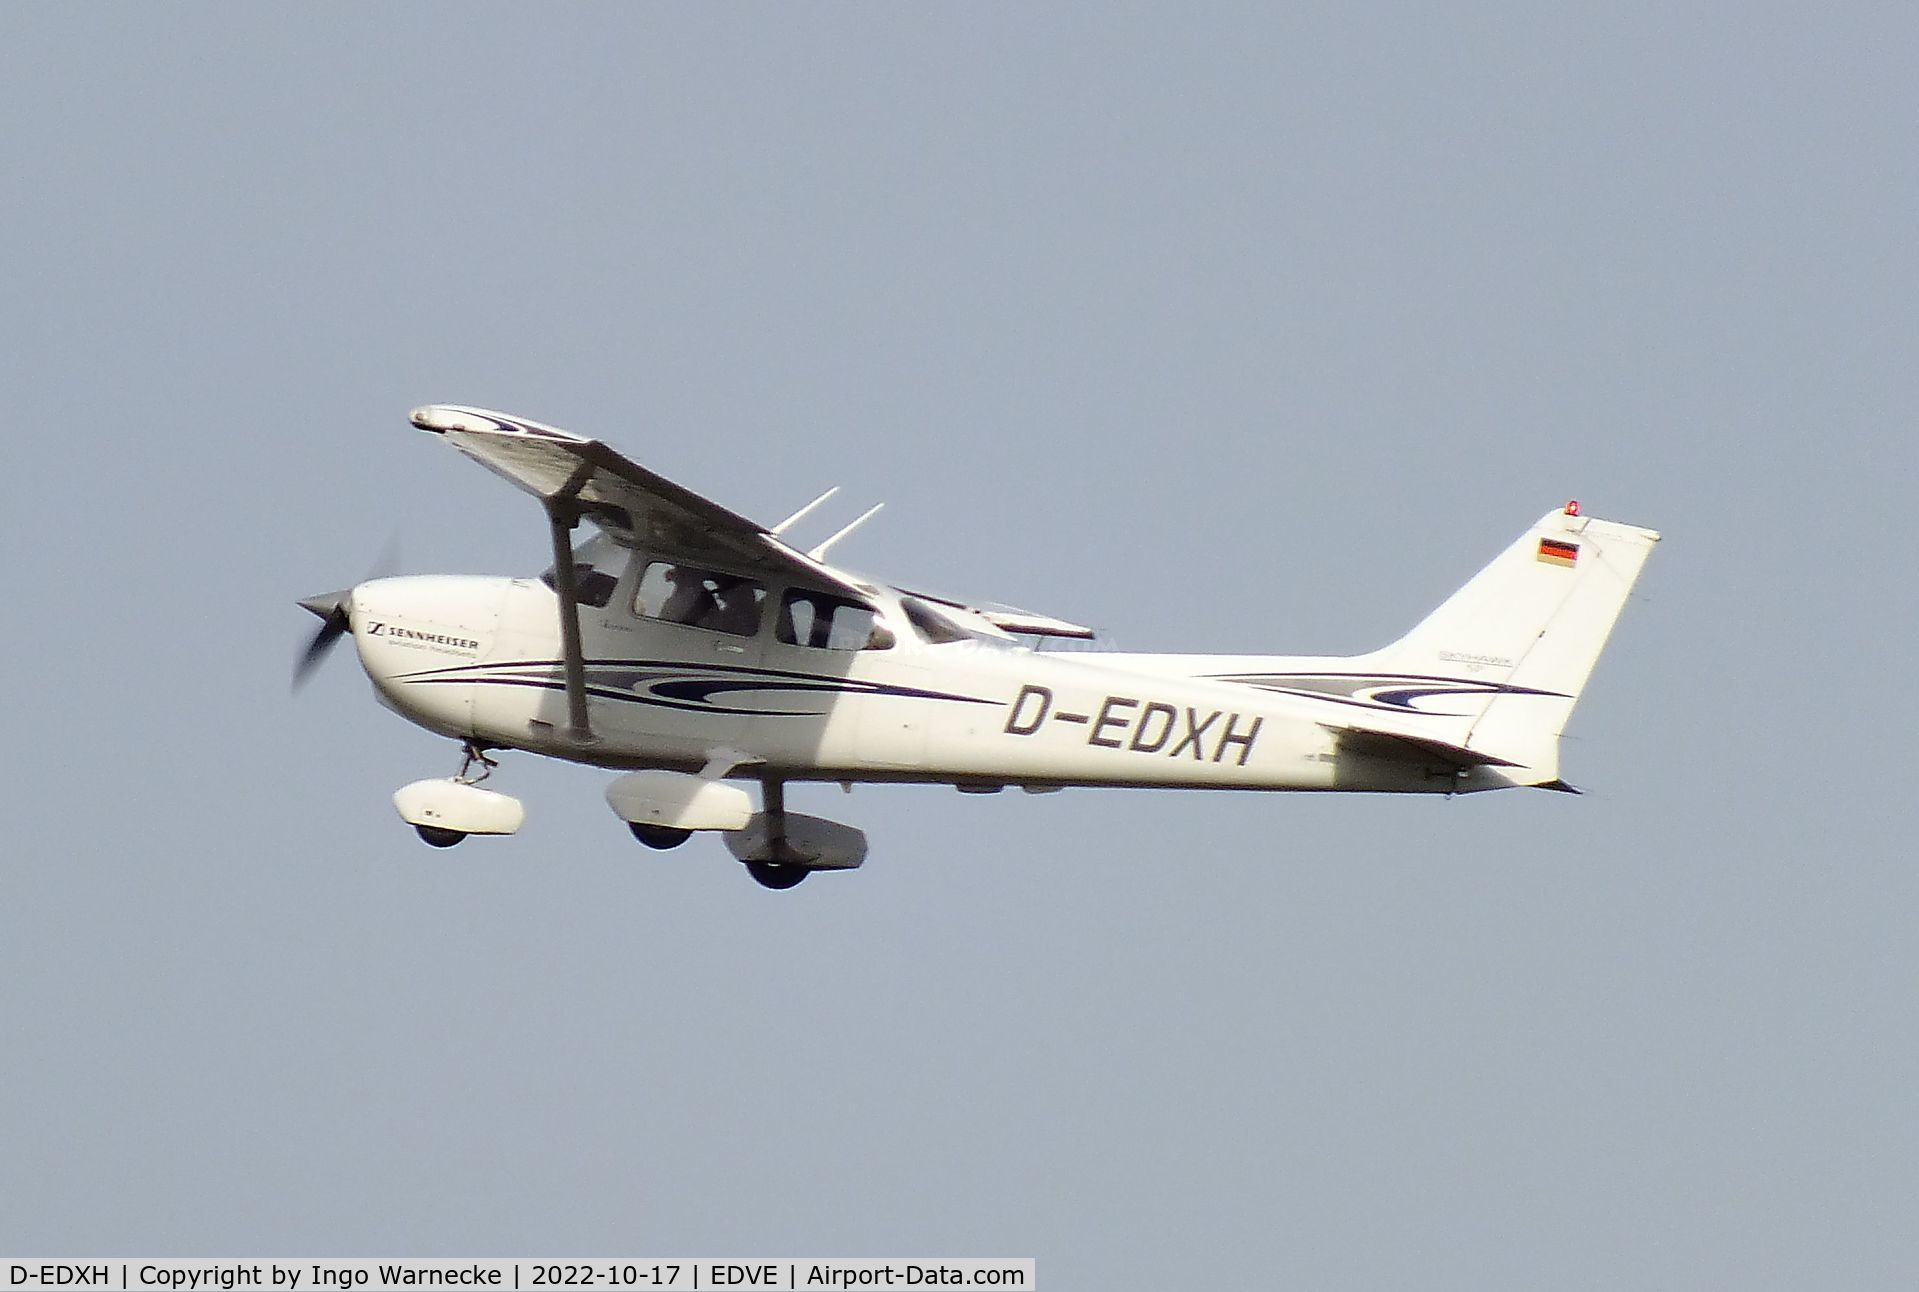 D-EDXH, 2005 Cessna 172S Skyhawk SP C/N 172S9773, Cessna 172S Skyhawk SP at Braunschweig-Wolfsburg airport, BS/Waggum